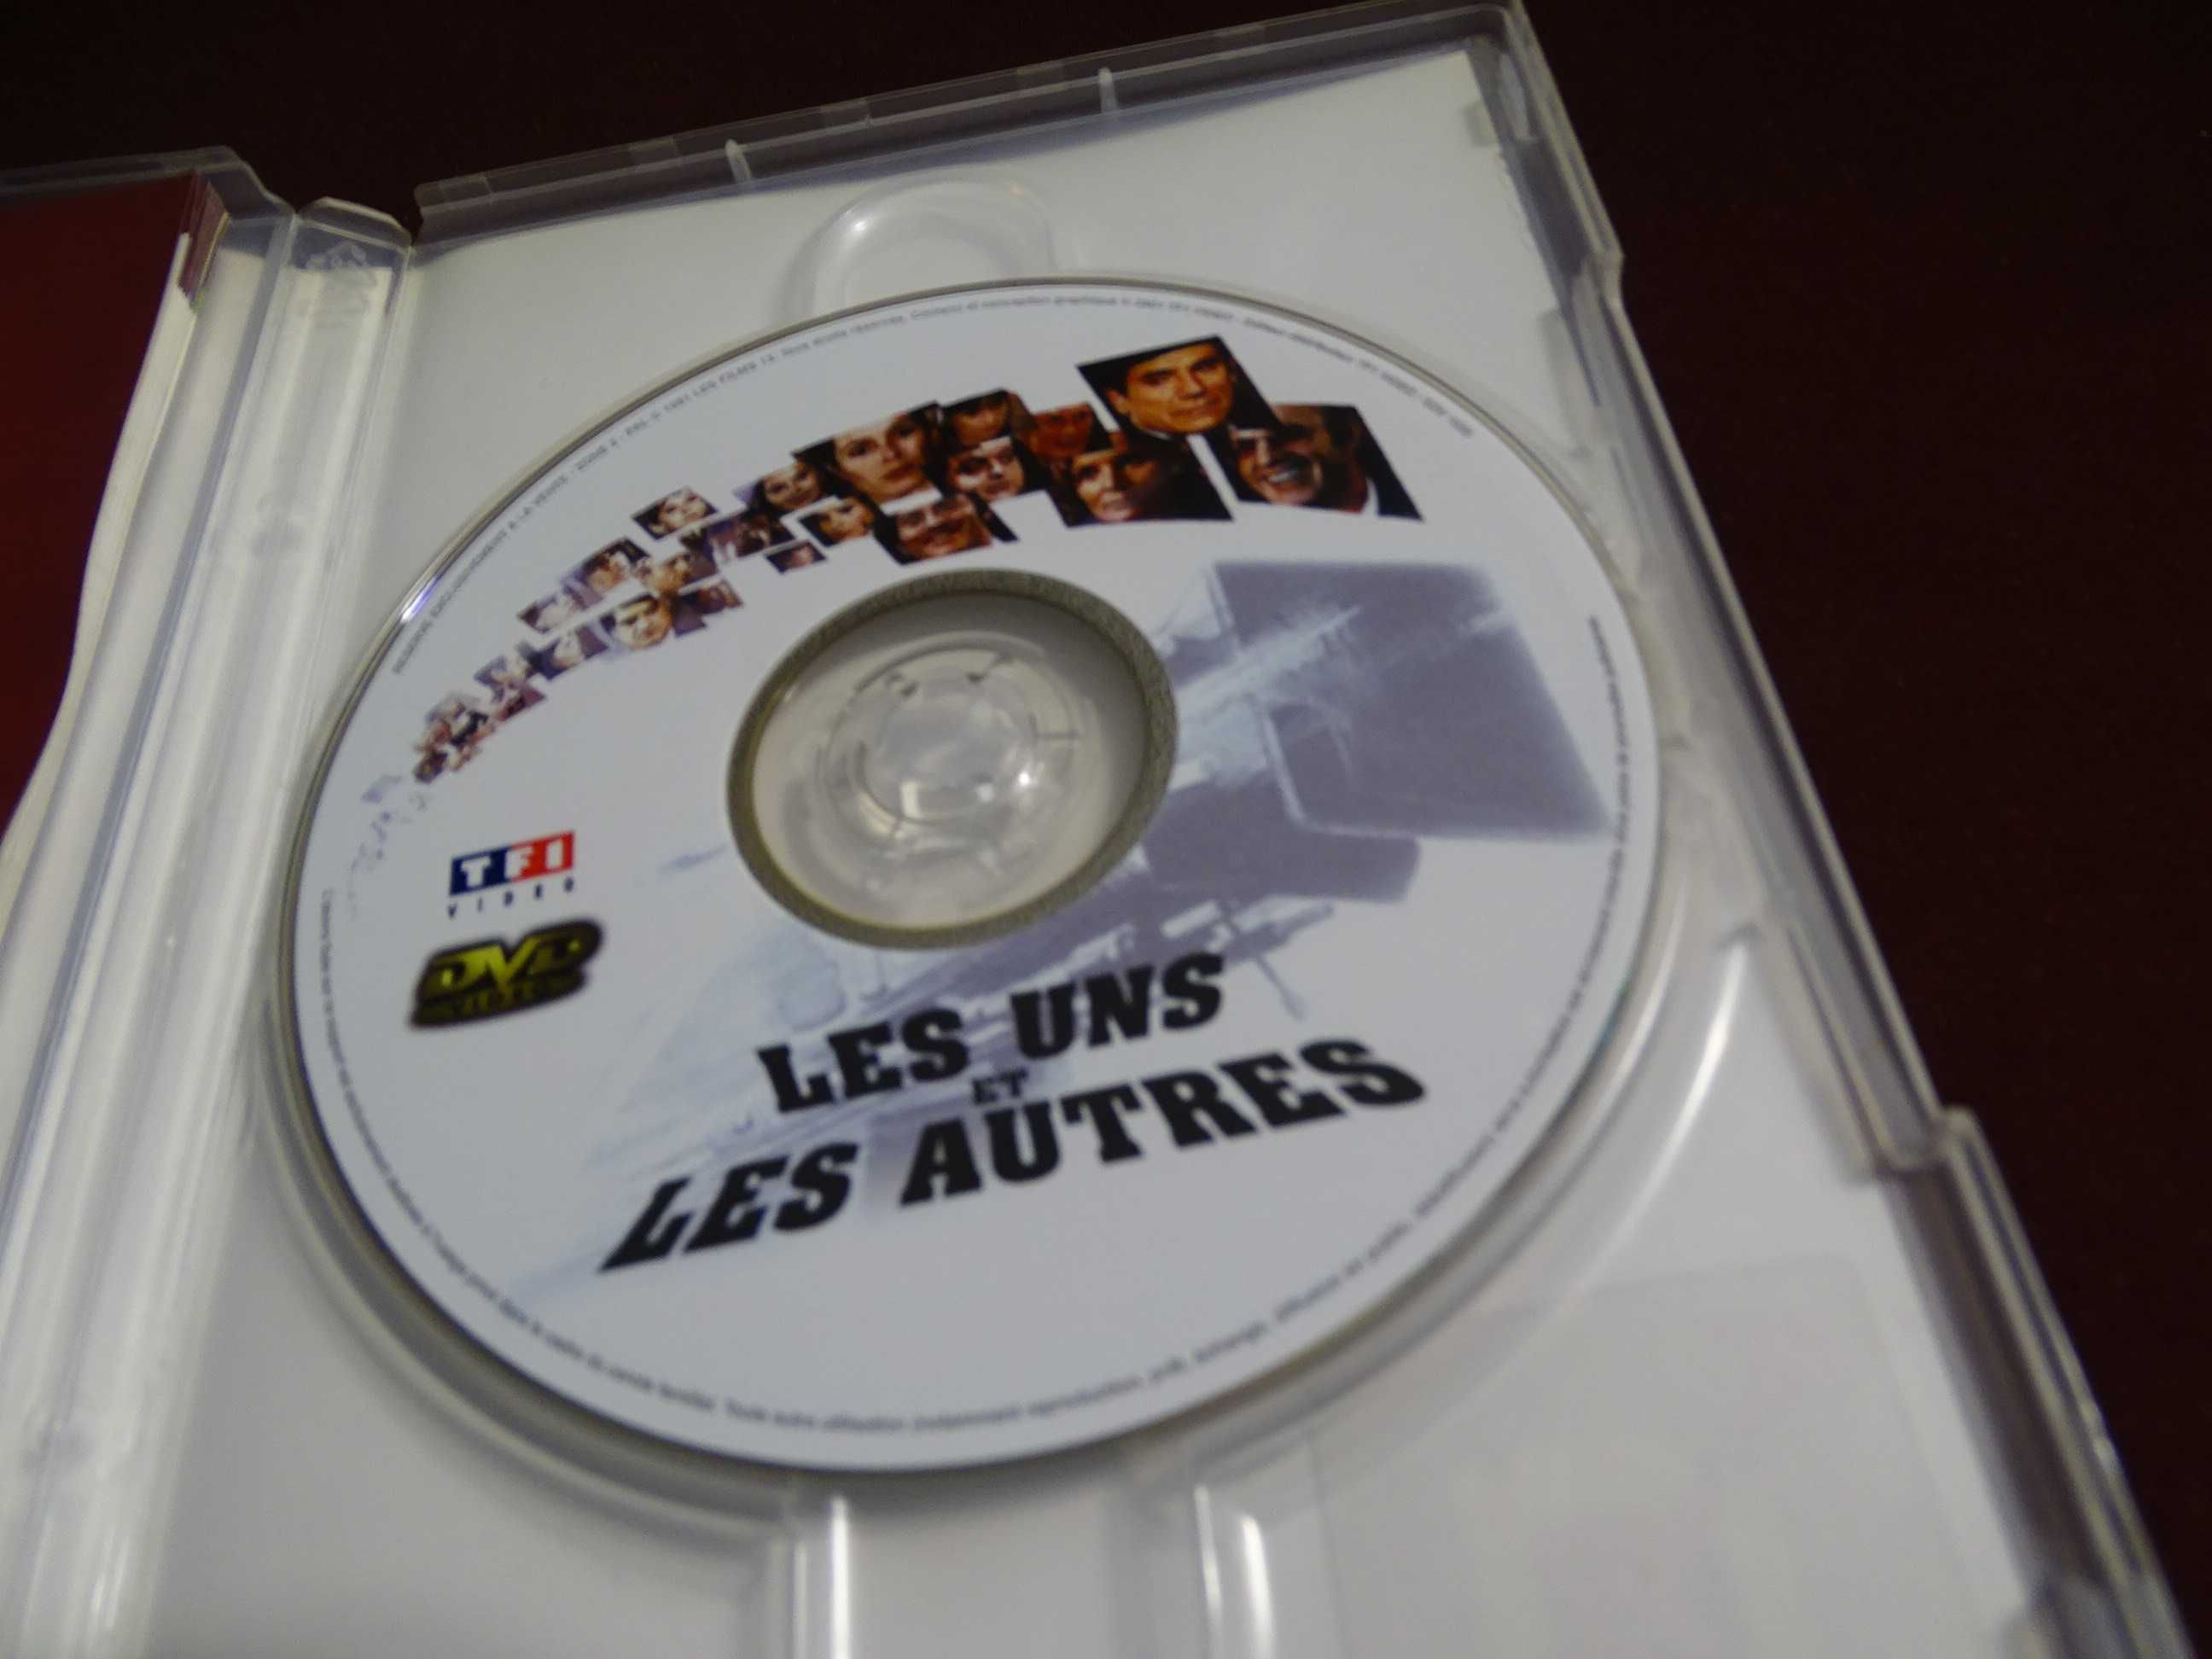 DVD-Les uns et les autres-Claude lelouch-Sem legendas PT